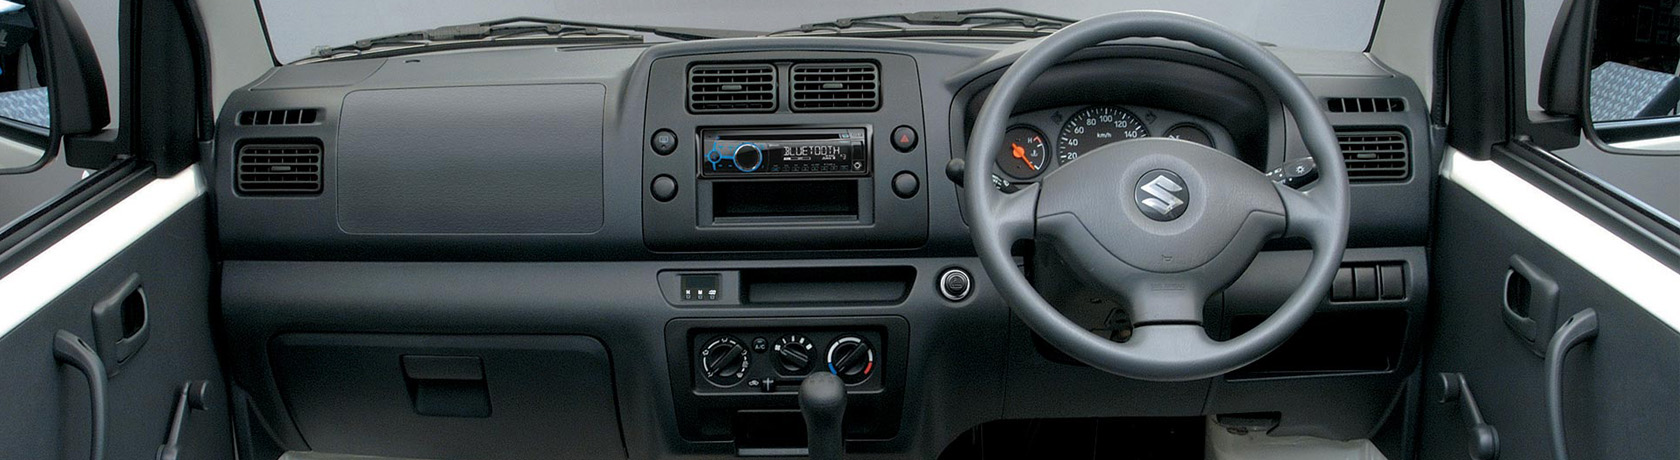 New Suzuki Apv For Sale In Cairns Trinity Suzuki